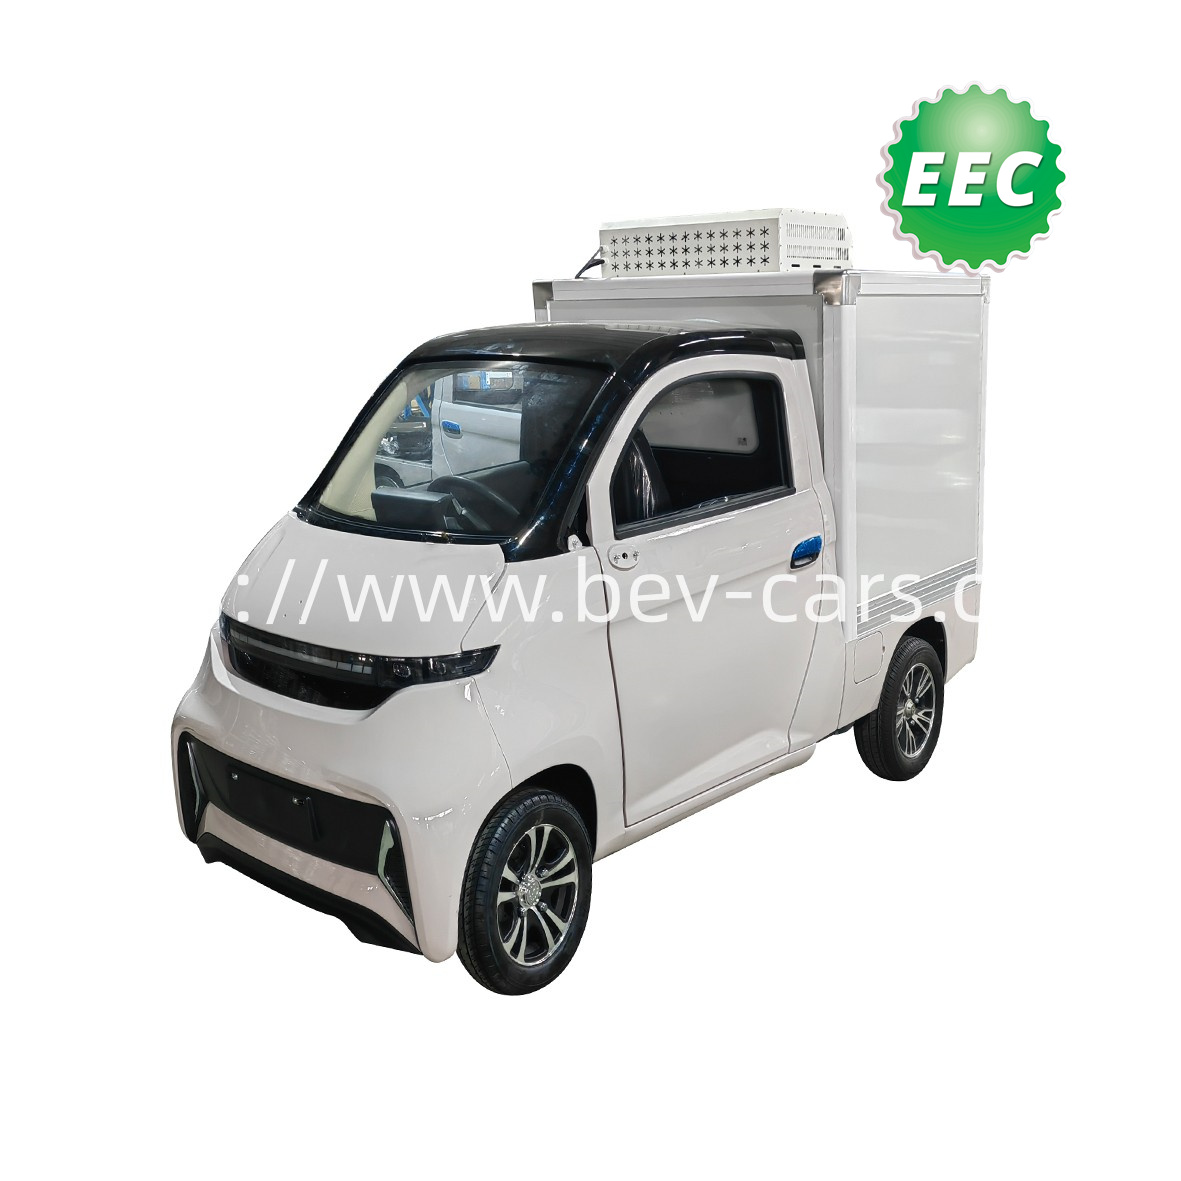 China Mini EV Pickup Truck Manufacturers and Factory - HeRun